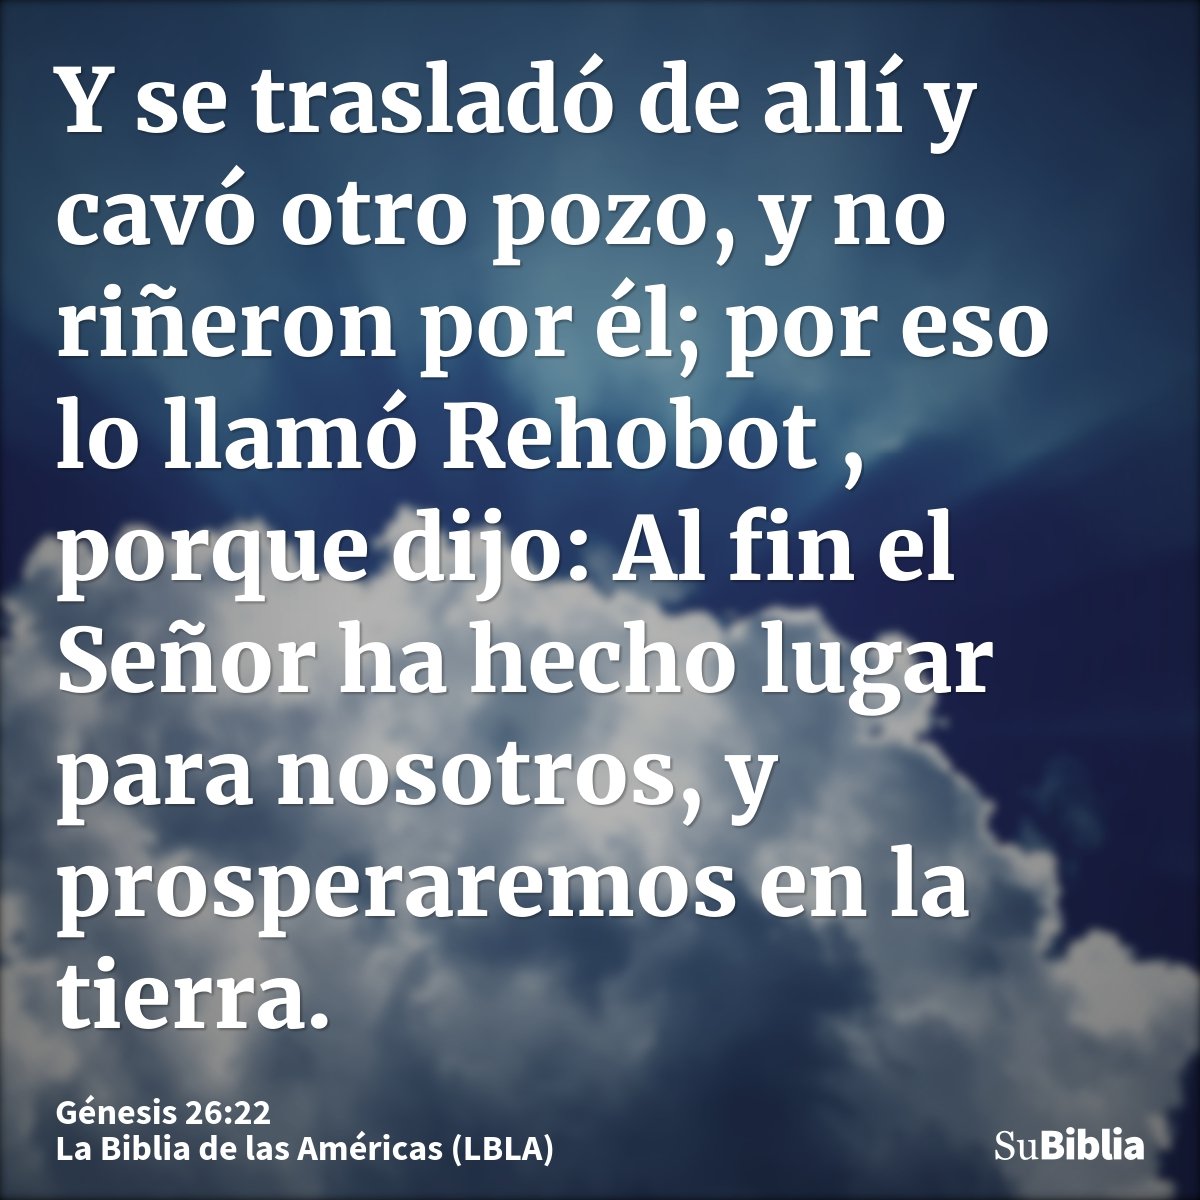 Y se trasladó de allí y cavó otro pozo, y no riñeron por él; por eso lo llamó Rehobot , porque dijo: Al fin el Señor ha hecho lugar para nosotros, y prosperarem...